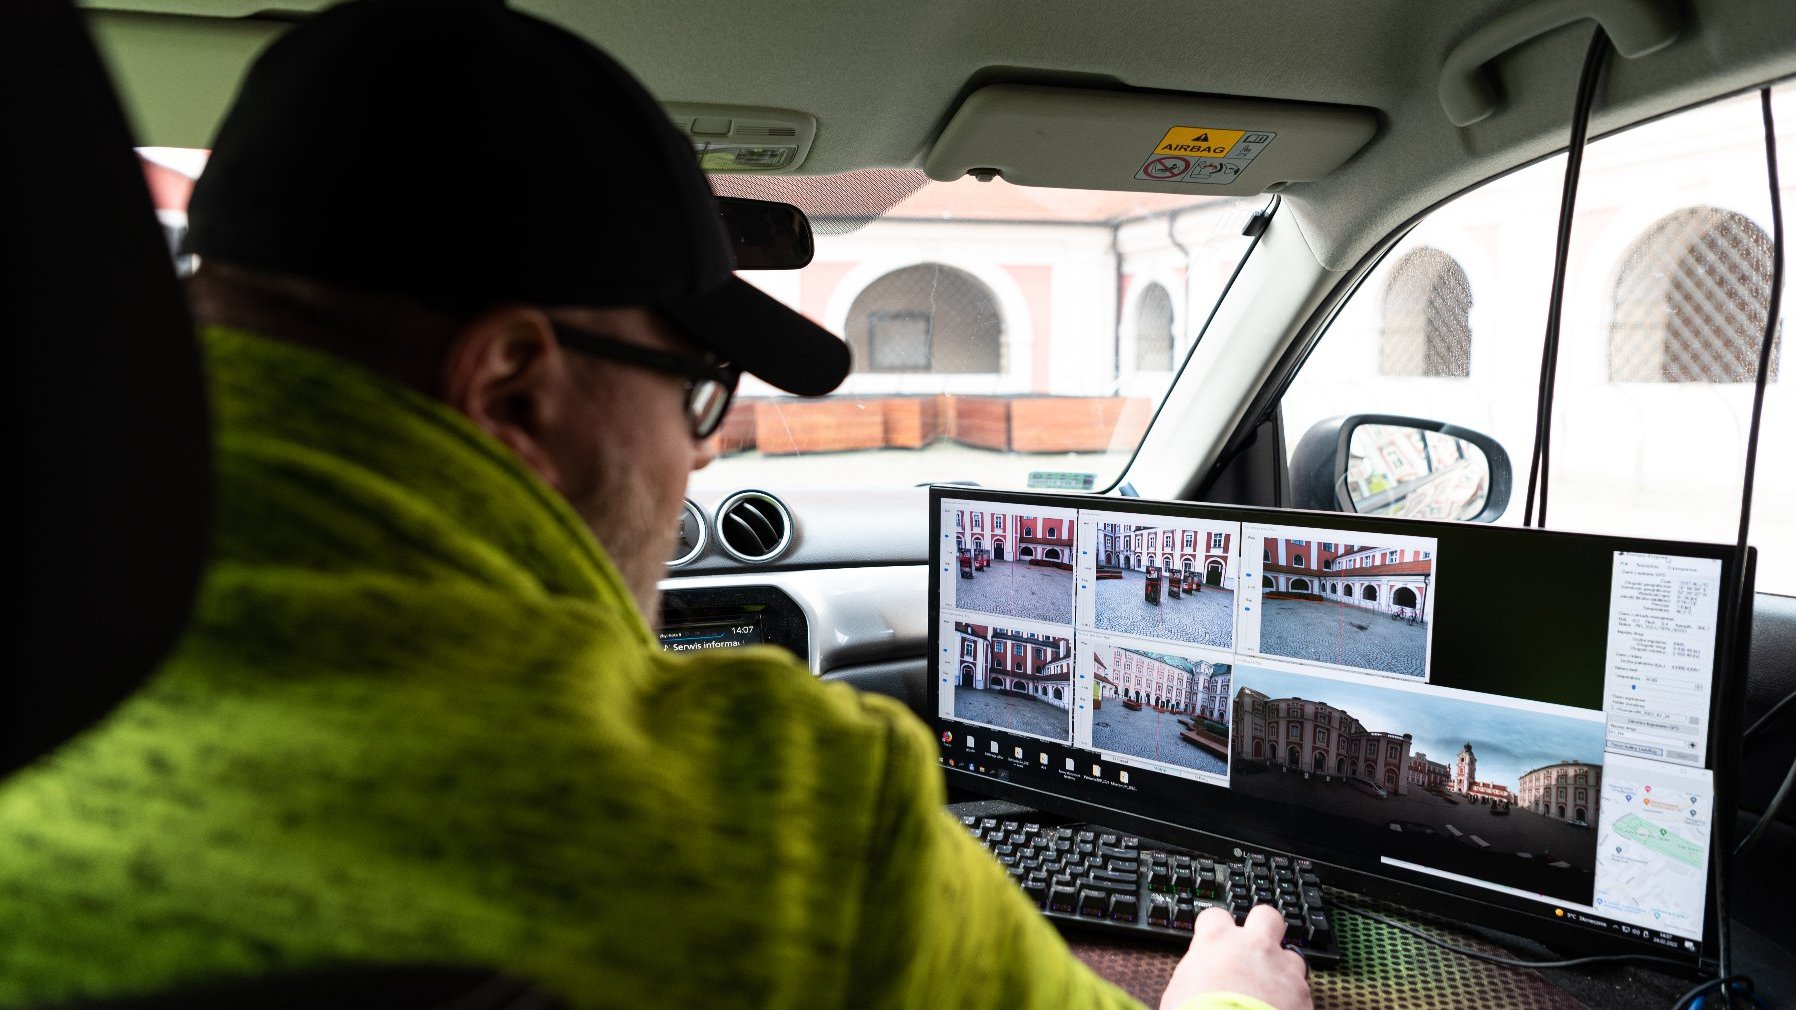 Zdjęcie przedstawia kierowce samochodu, który patrzy na moniitor, na którym widać obraz z kamer umieszczonych na dachu pojazdu.